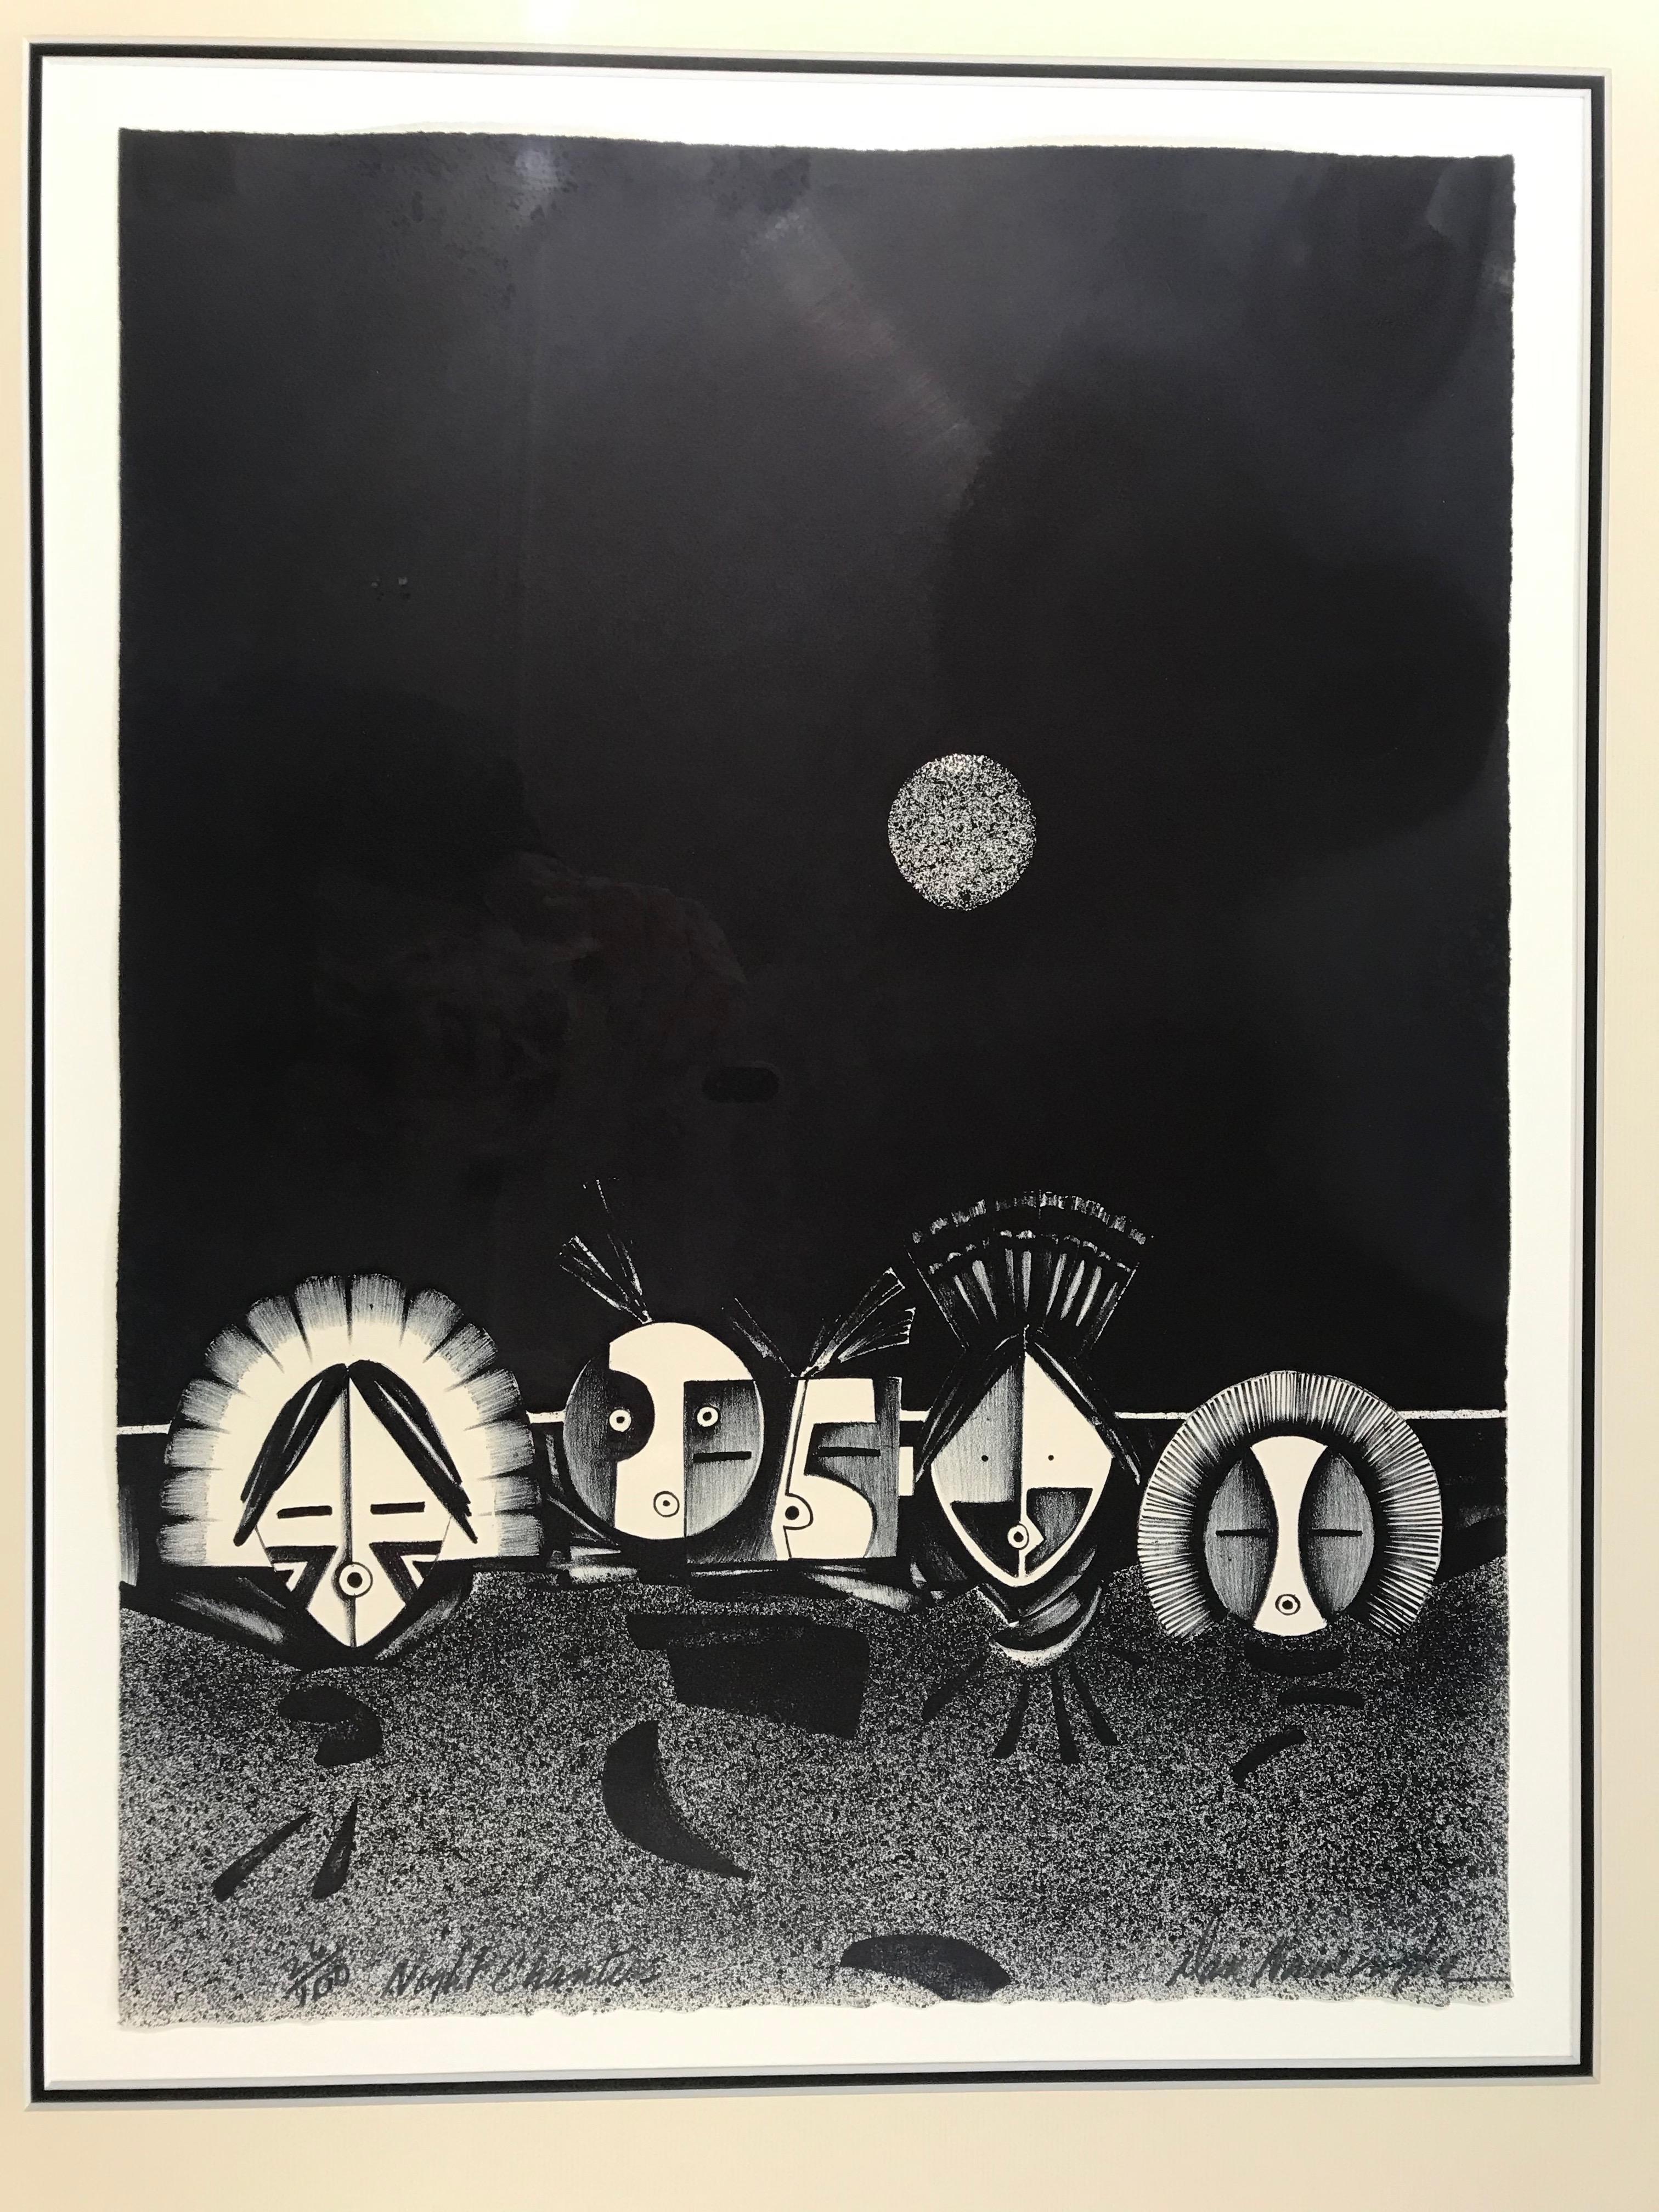 Night Chanters, lithographie encadrée en noir et blanc, kachina, édition limitée - Print de Dan Namingha